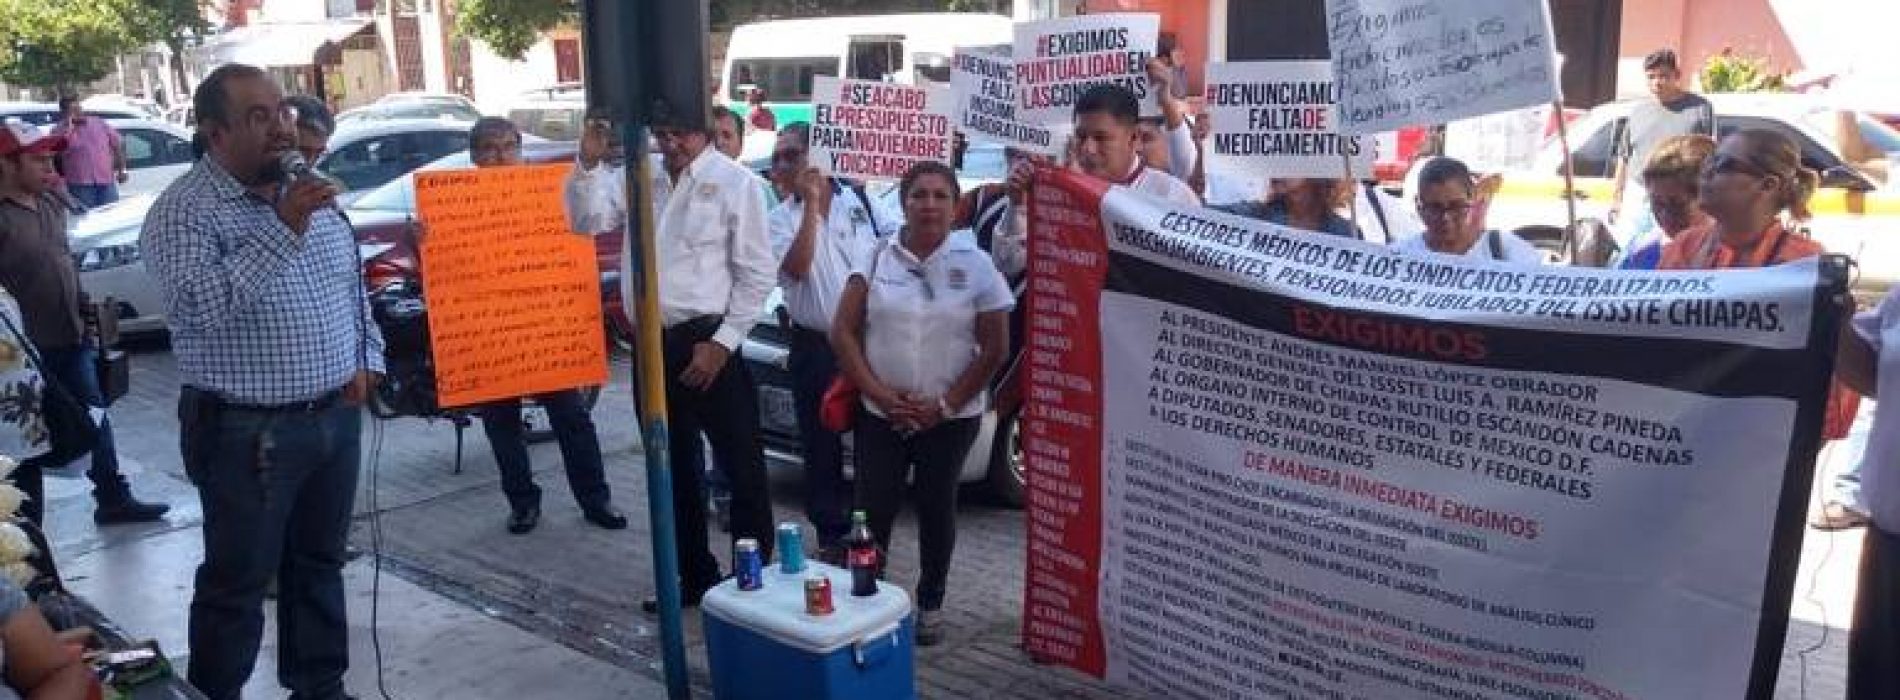 Protestan por carencias en el ISSSTE Chiapas